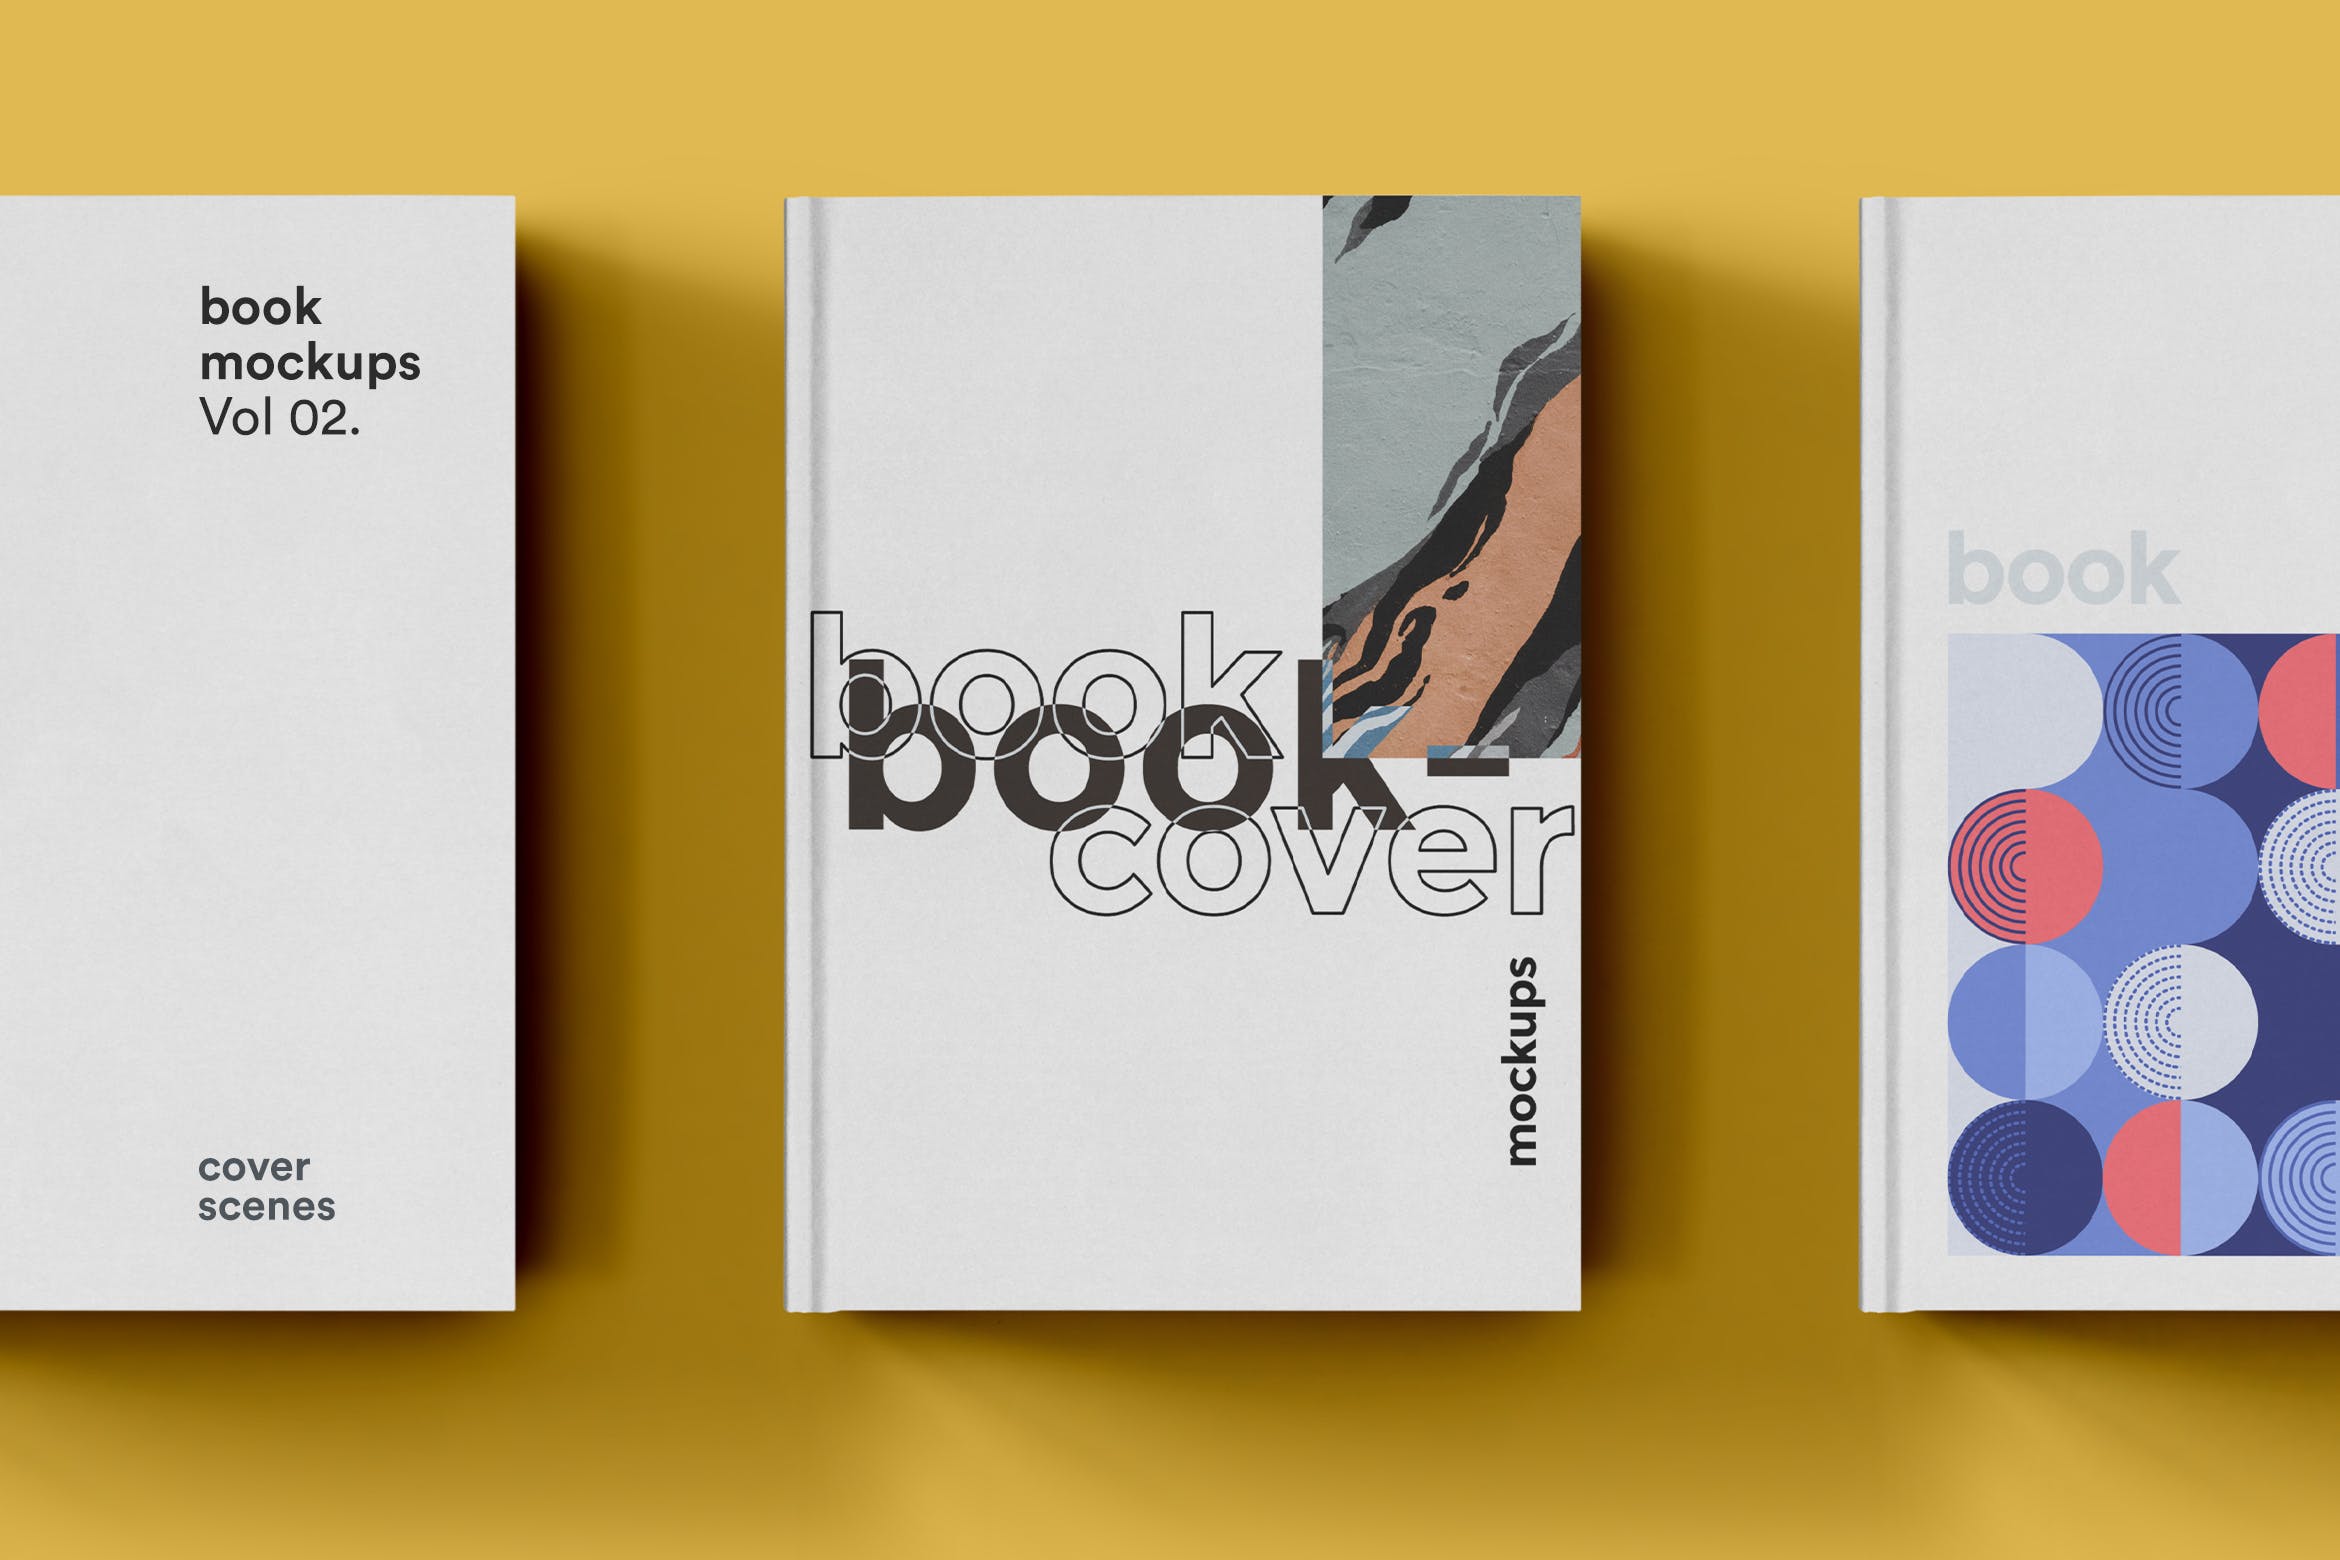 硬封设计图书封面印刷效果图样机16图库精选 Book Cover Mockup插图